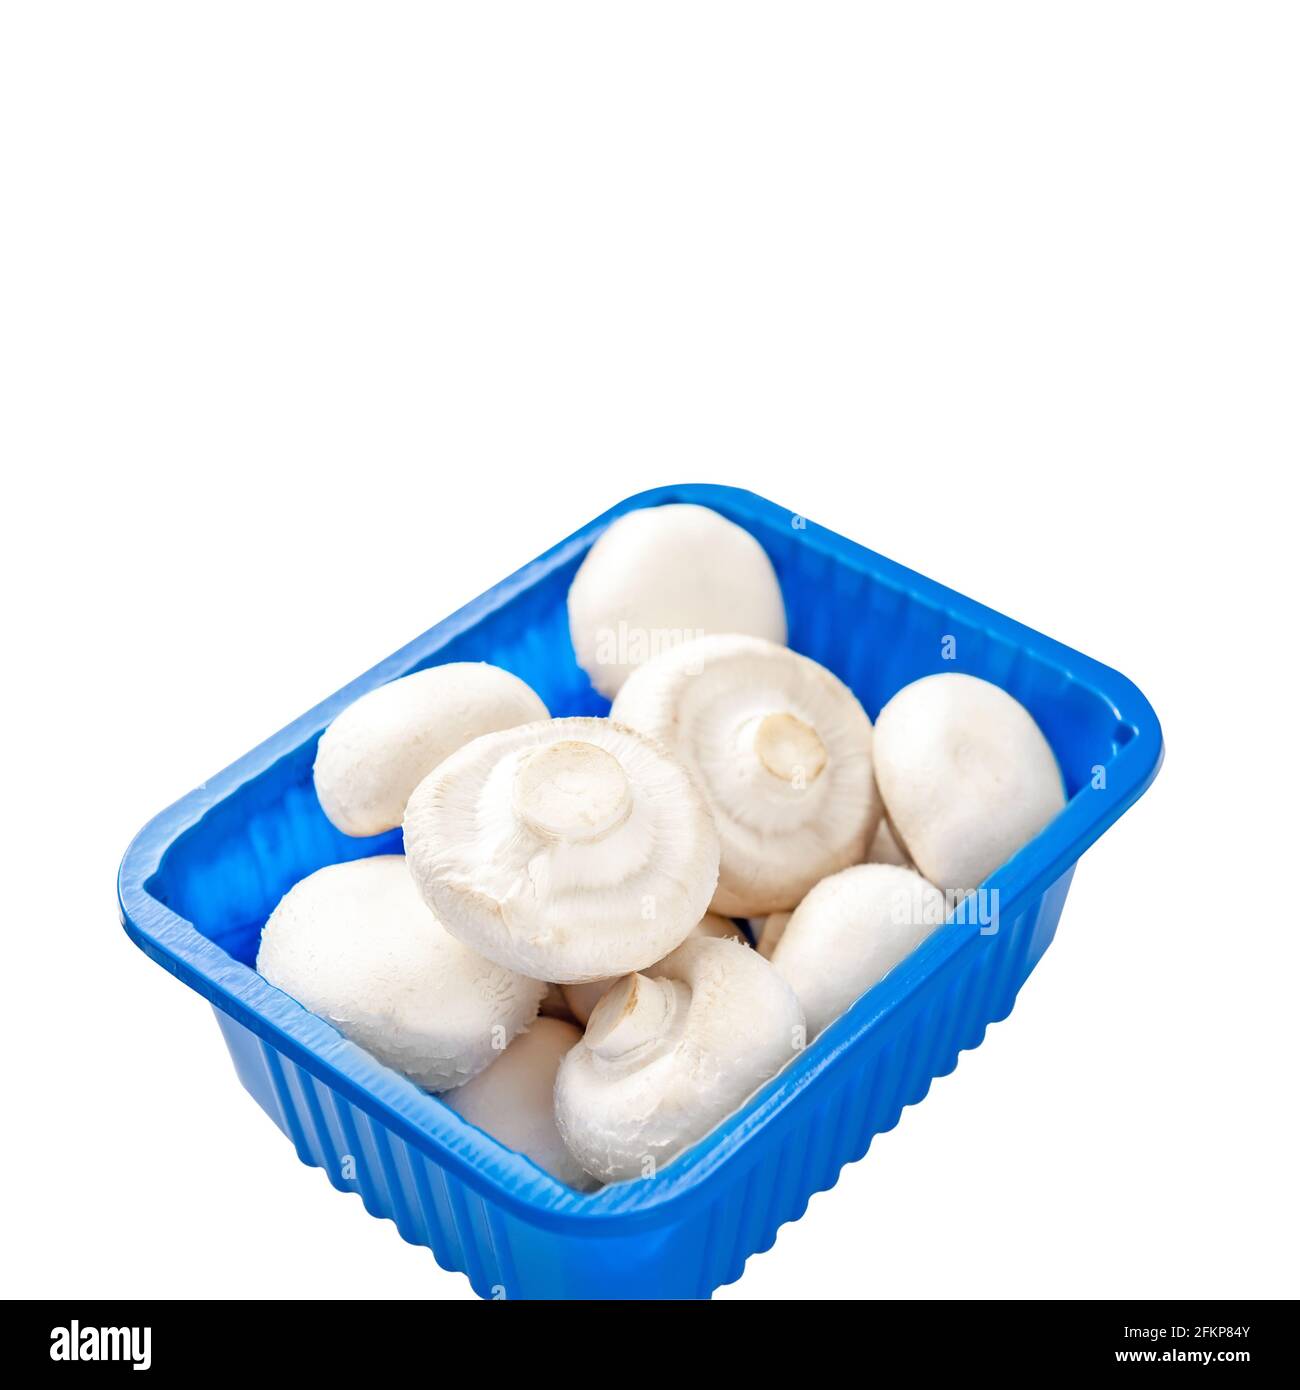 Frische Pilze in einer blauen Kunststoffverpackung isoliert auf weißem Hintergrund. Pilze in der Ladenverpackung, geschält und bereit zum Kochen. Stockfoto